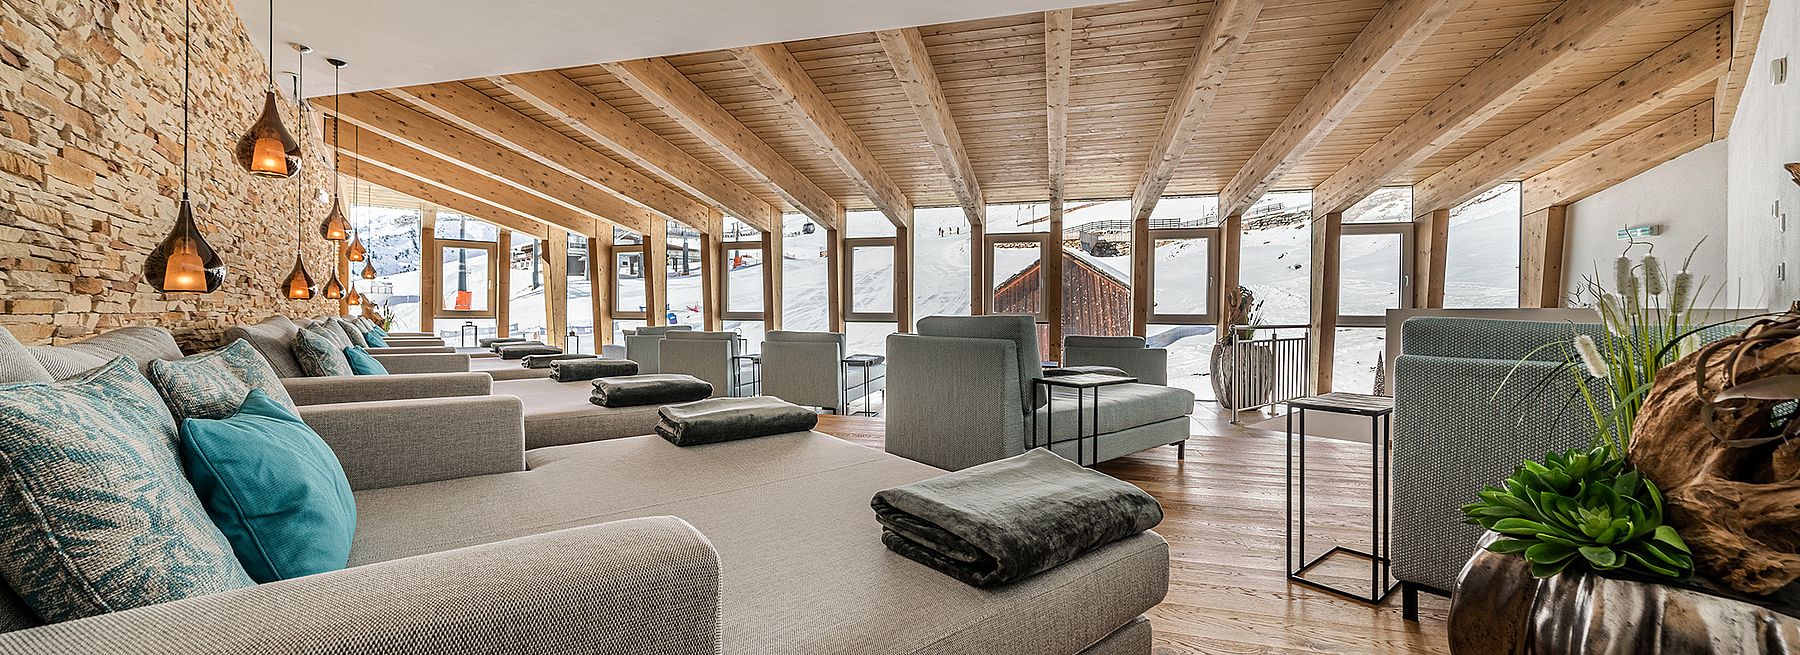 Ski Hotel Edelweiss in Hochsölden Relaxation room